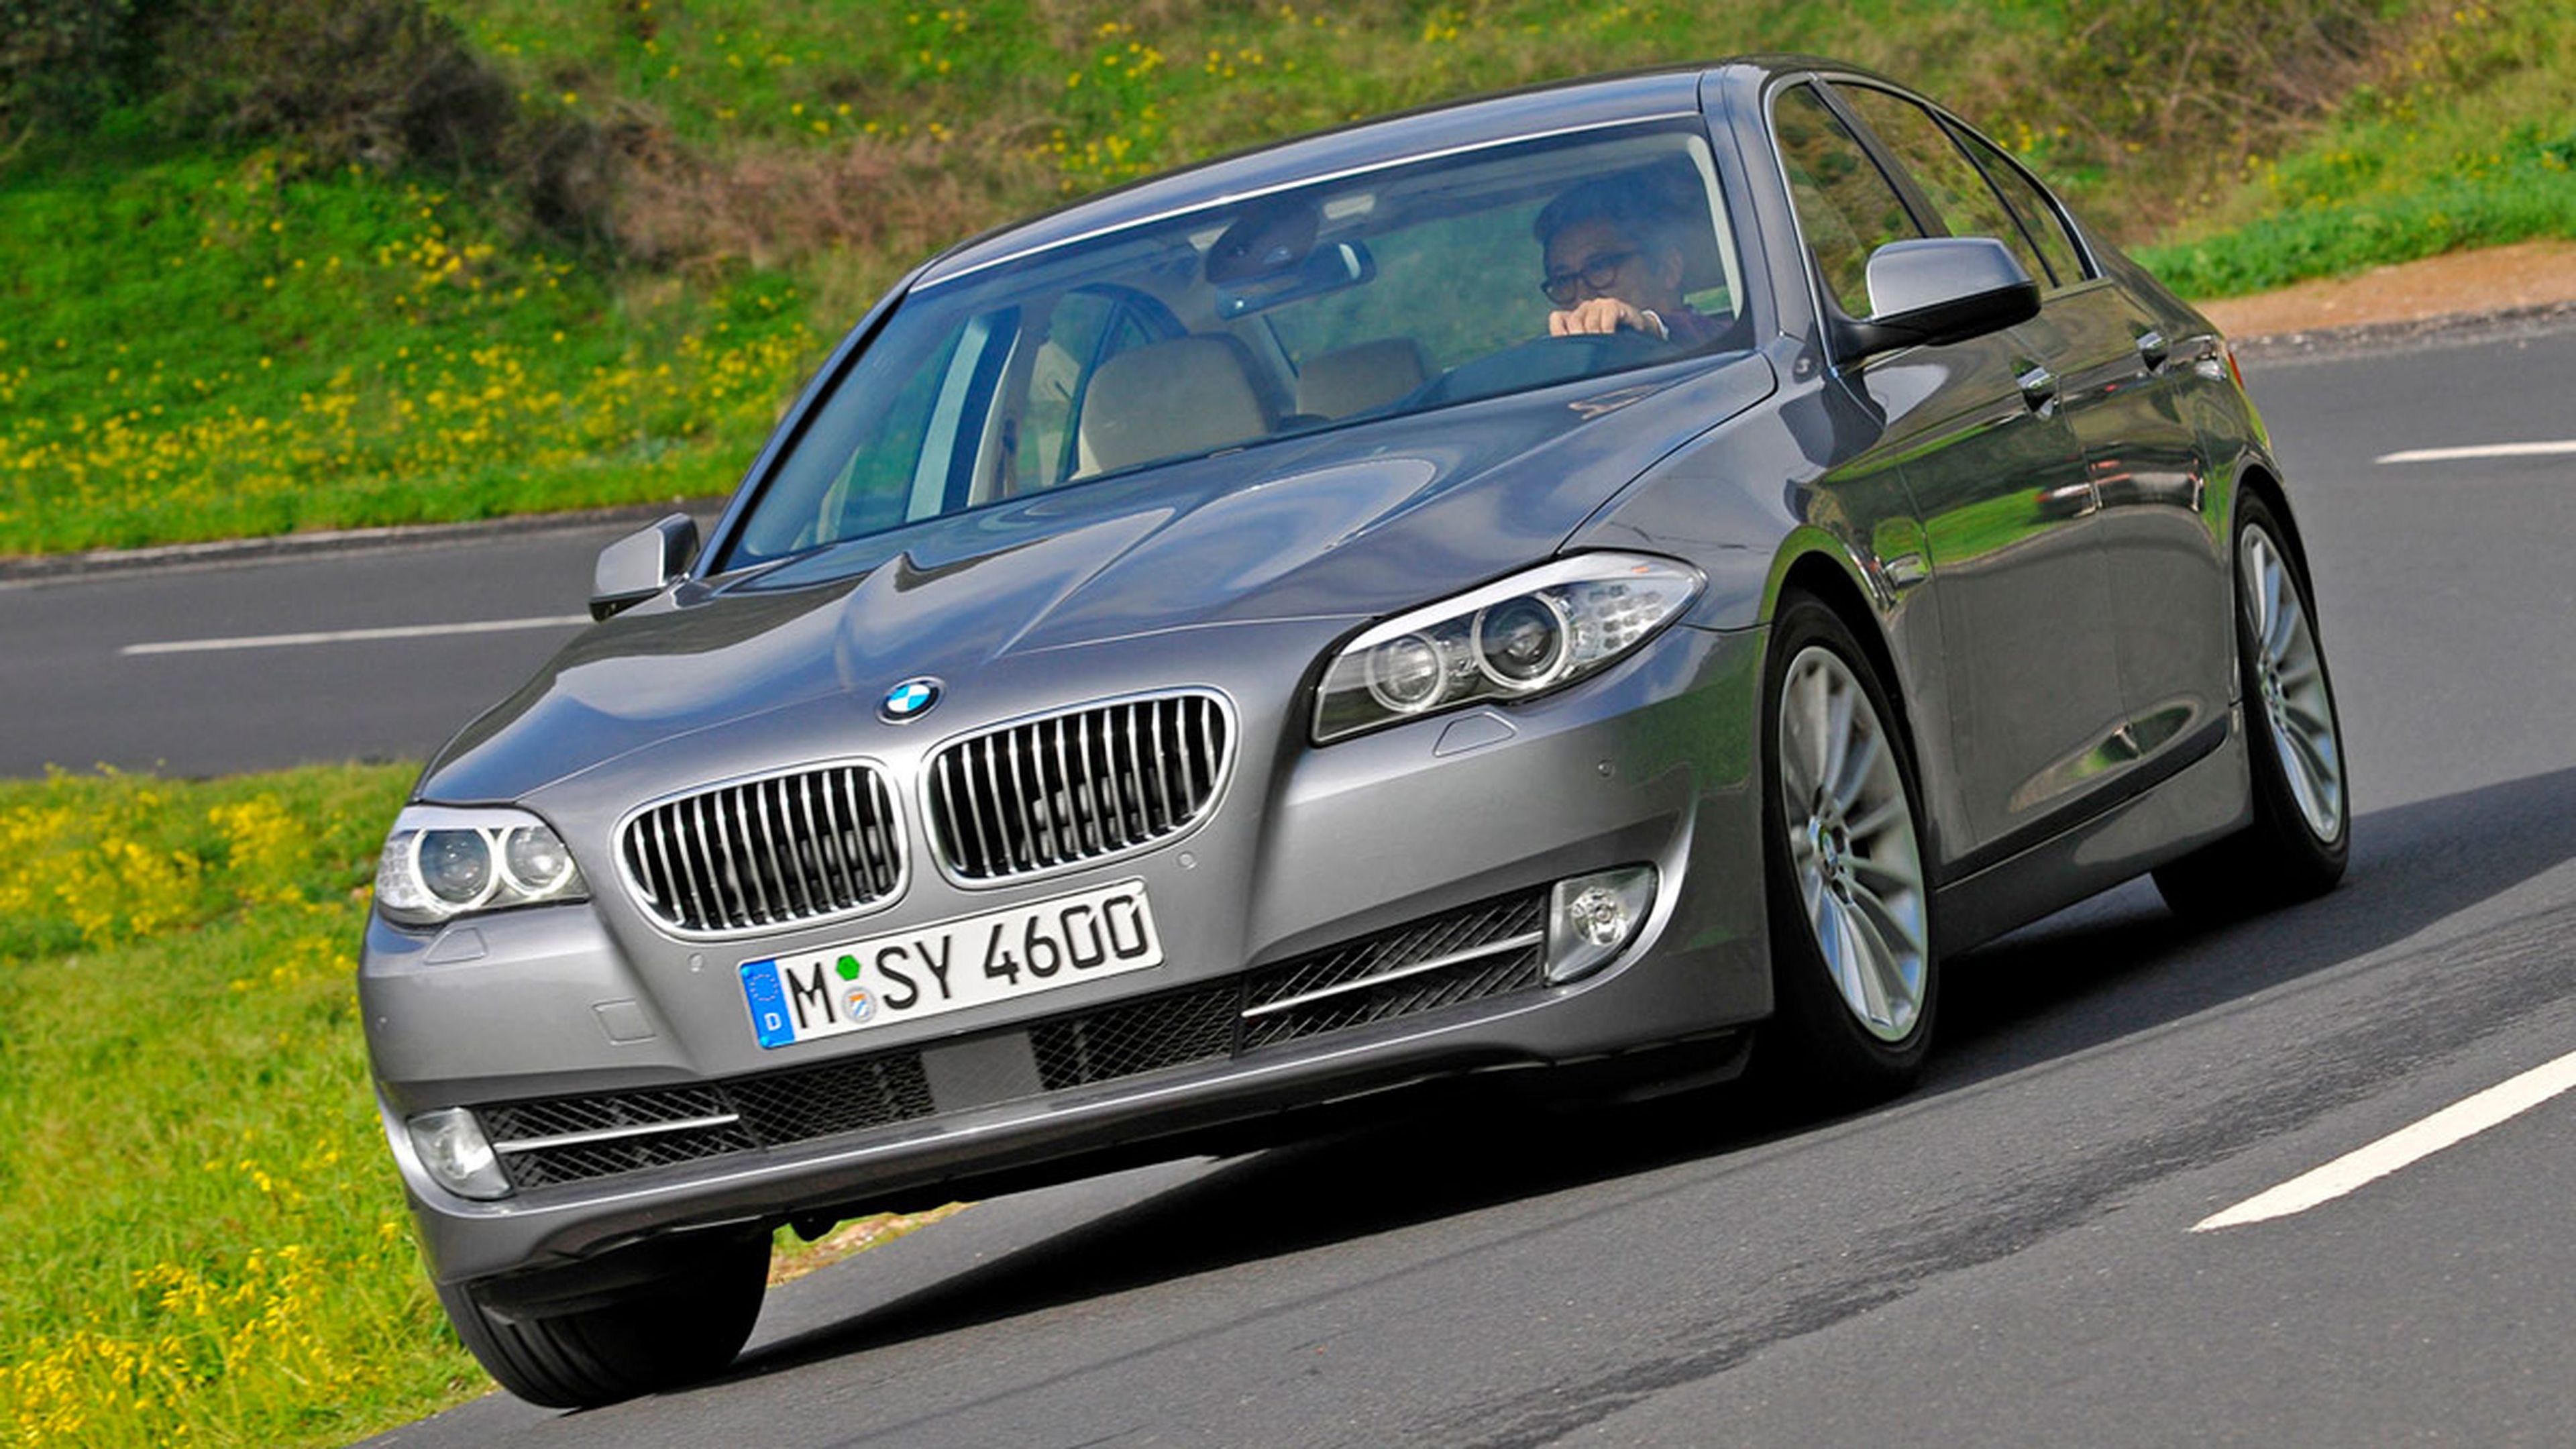 BMW X5 E70 de segunda mano, buena opción?? 